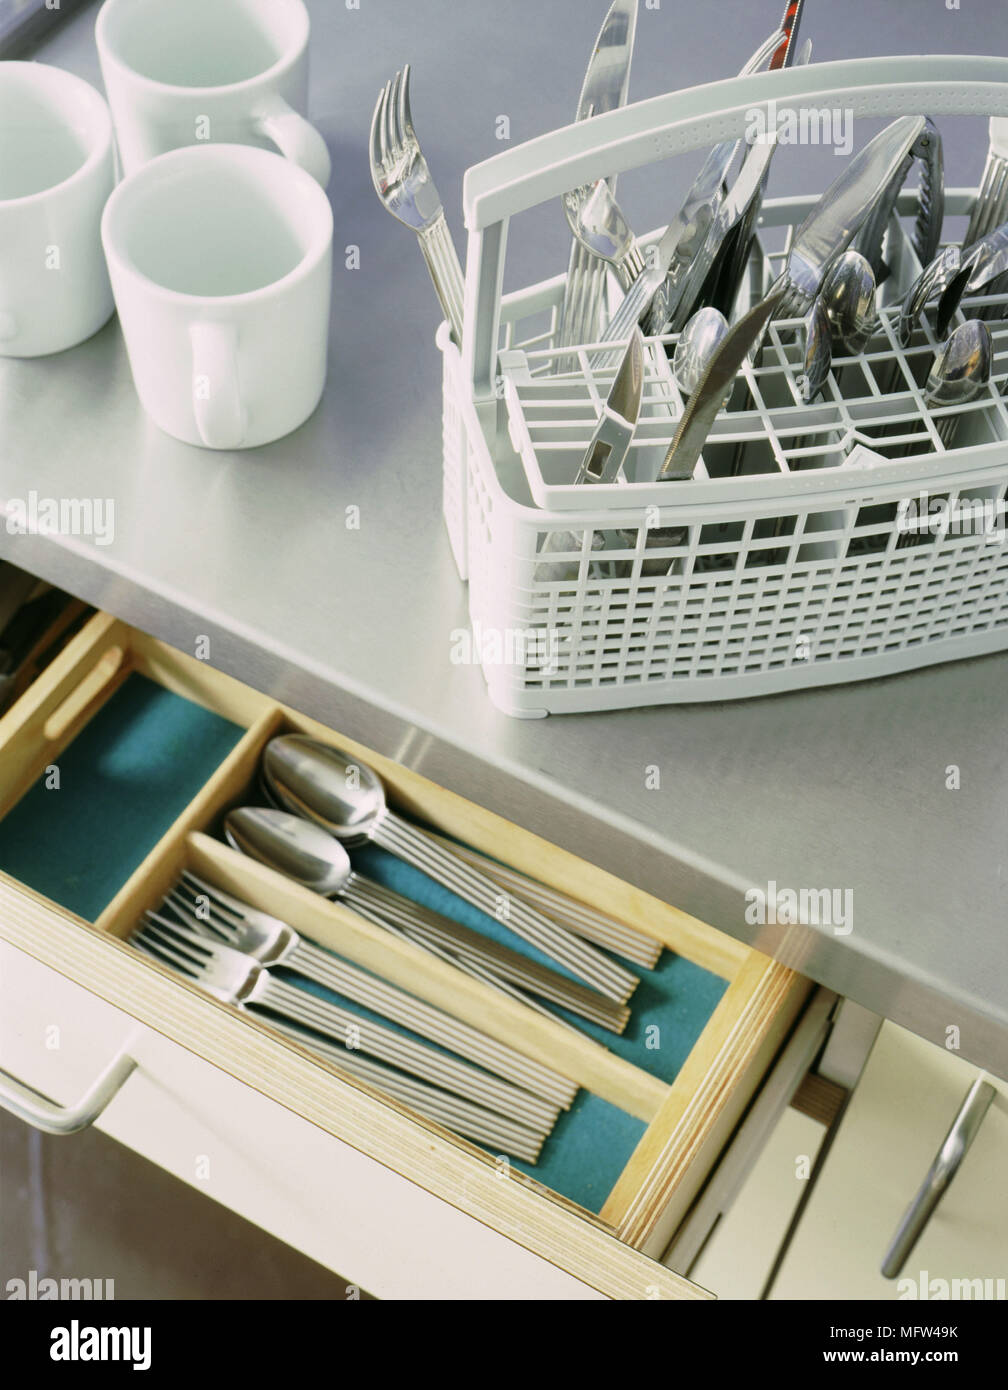 Un dettaglio di una cucina moderna in acciaio inox piano di lavoro posate  in plastica cestello per lavastoviglie cassetto aperto tre tazze di colore  bianco Foto stock - Alamy